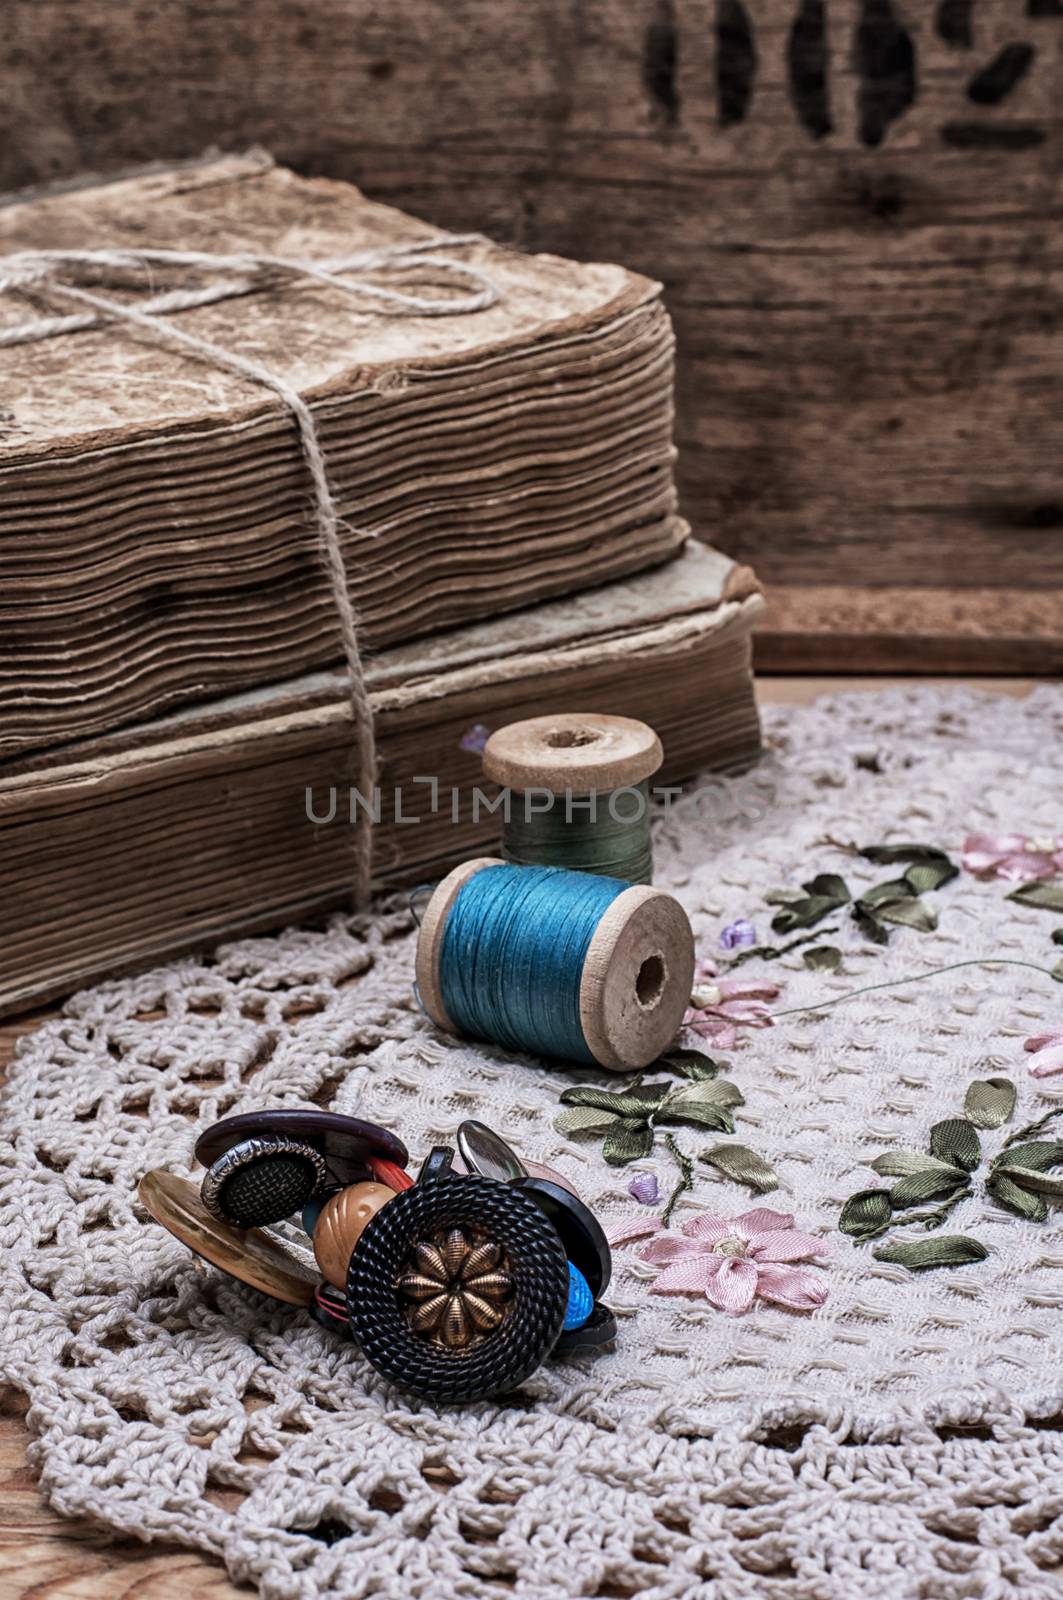 sewing threads by LMykola